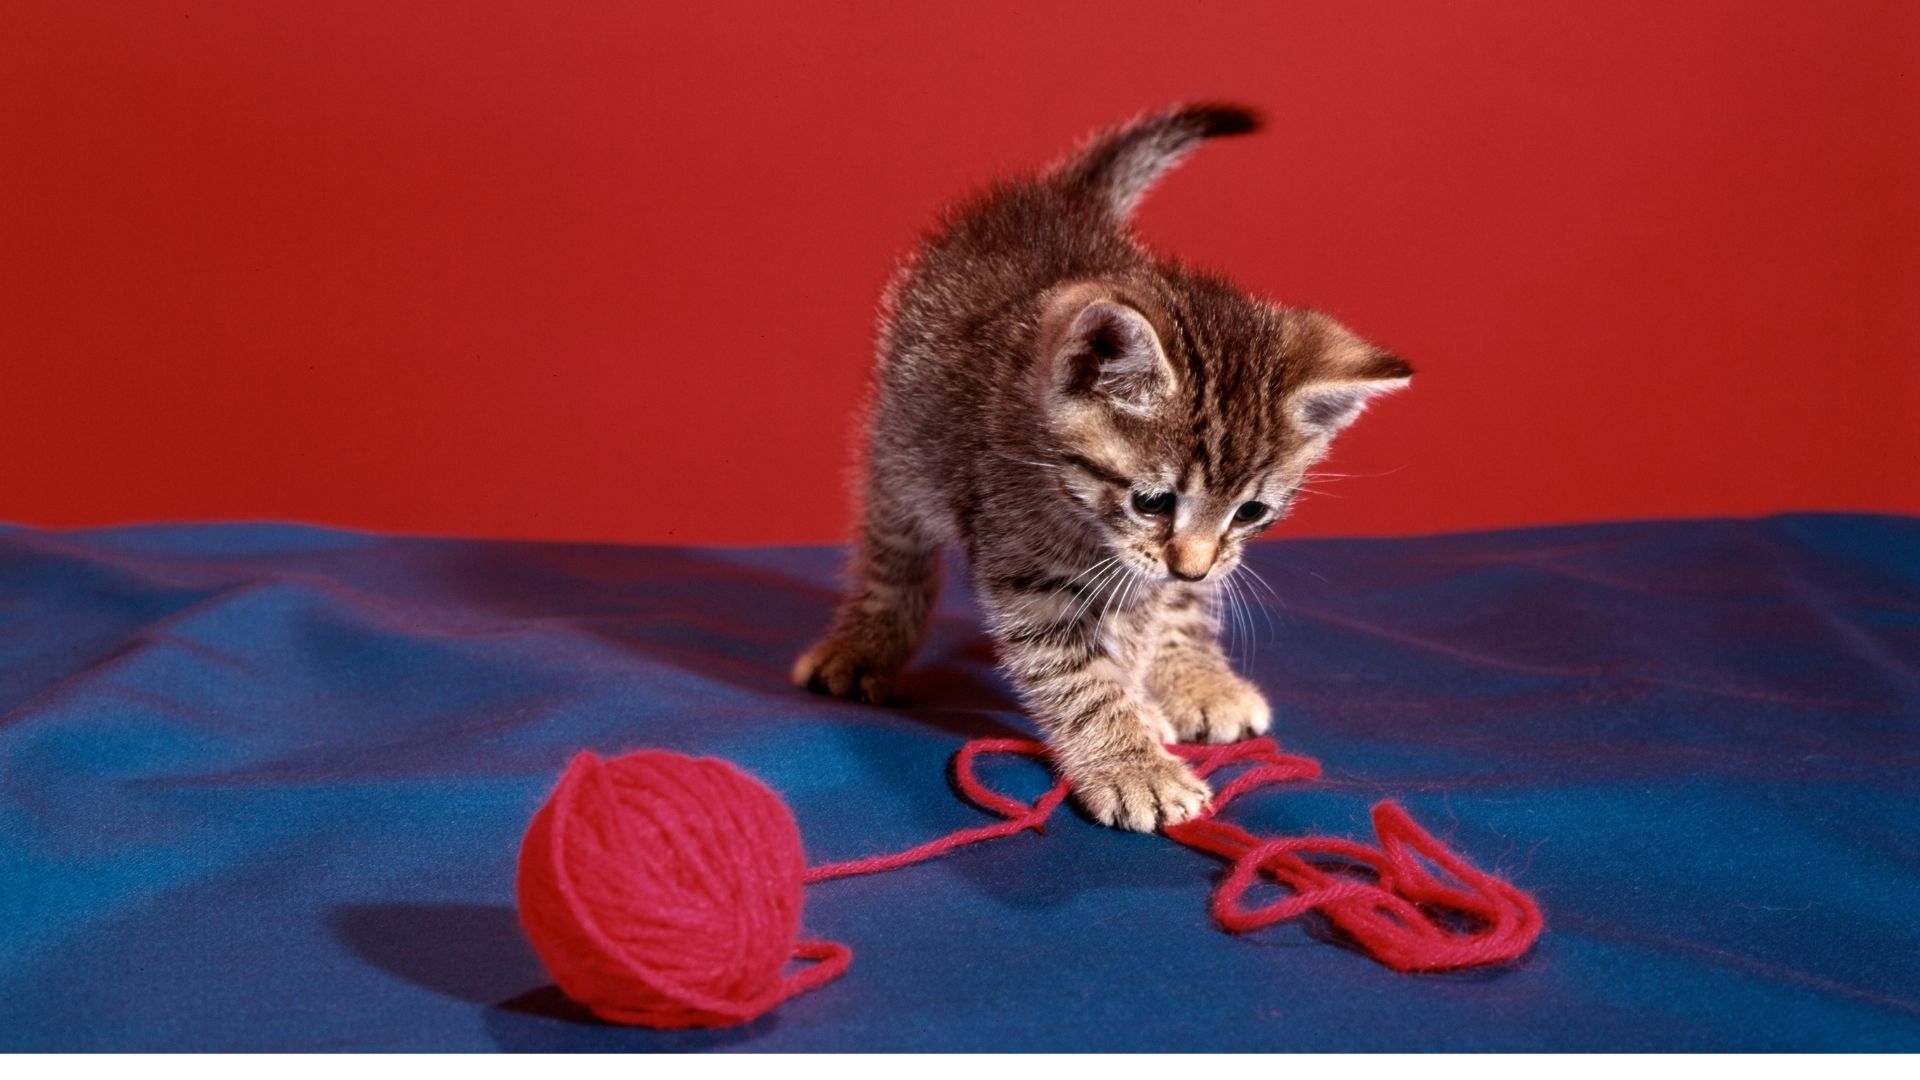 Al mordisquear la lana puede ingerir fibras y atragantarse (Getty)